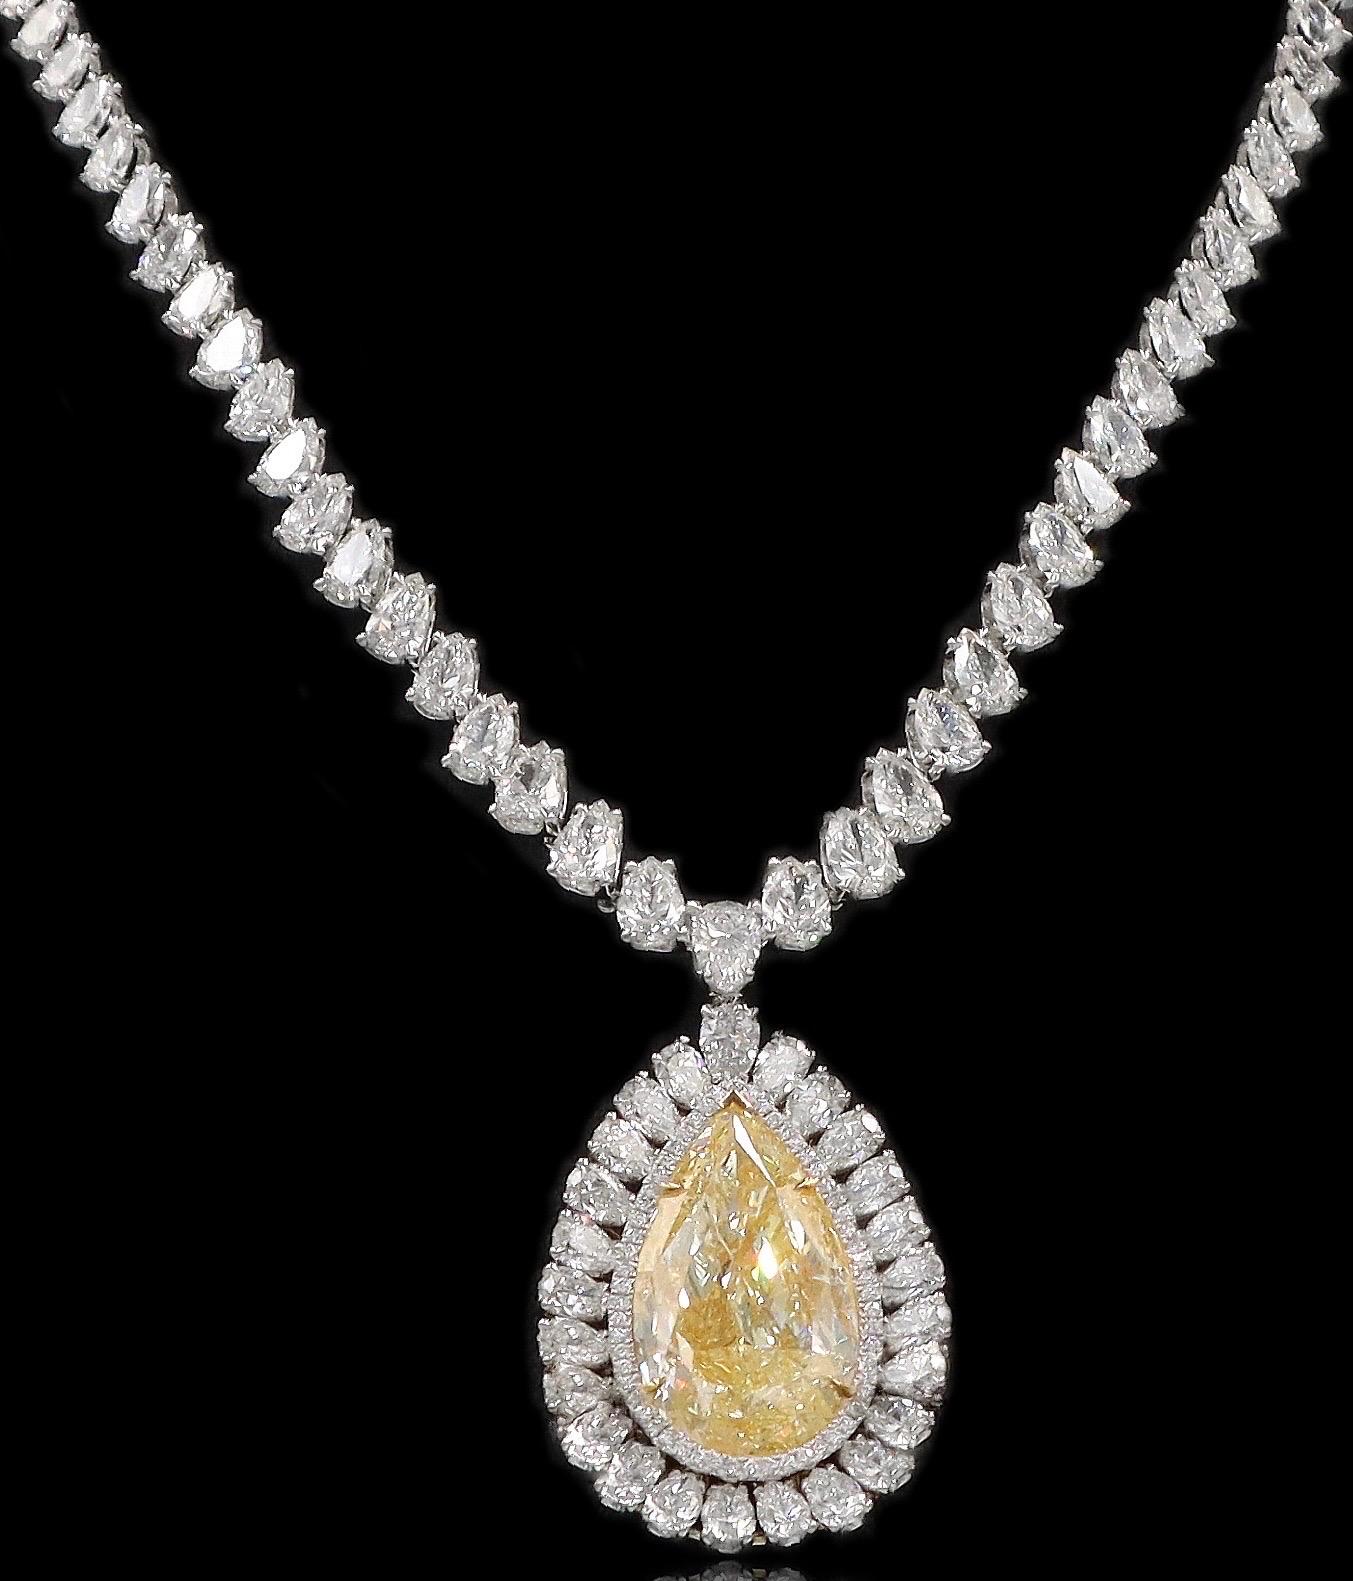 De la bijouterie Emilio située sur l'emblématique Cinquième Avenue de New York,
présentant un diamant jaune certifié GIA de 25,00 carats en forme de poire. Le collier est serti d'un ensemble de diamants de forme poire et ronde ajoutant 58,70 carats